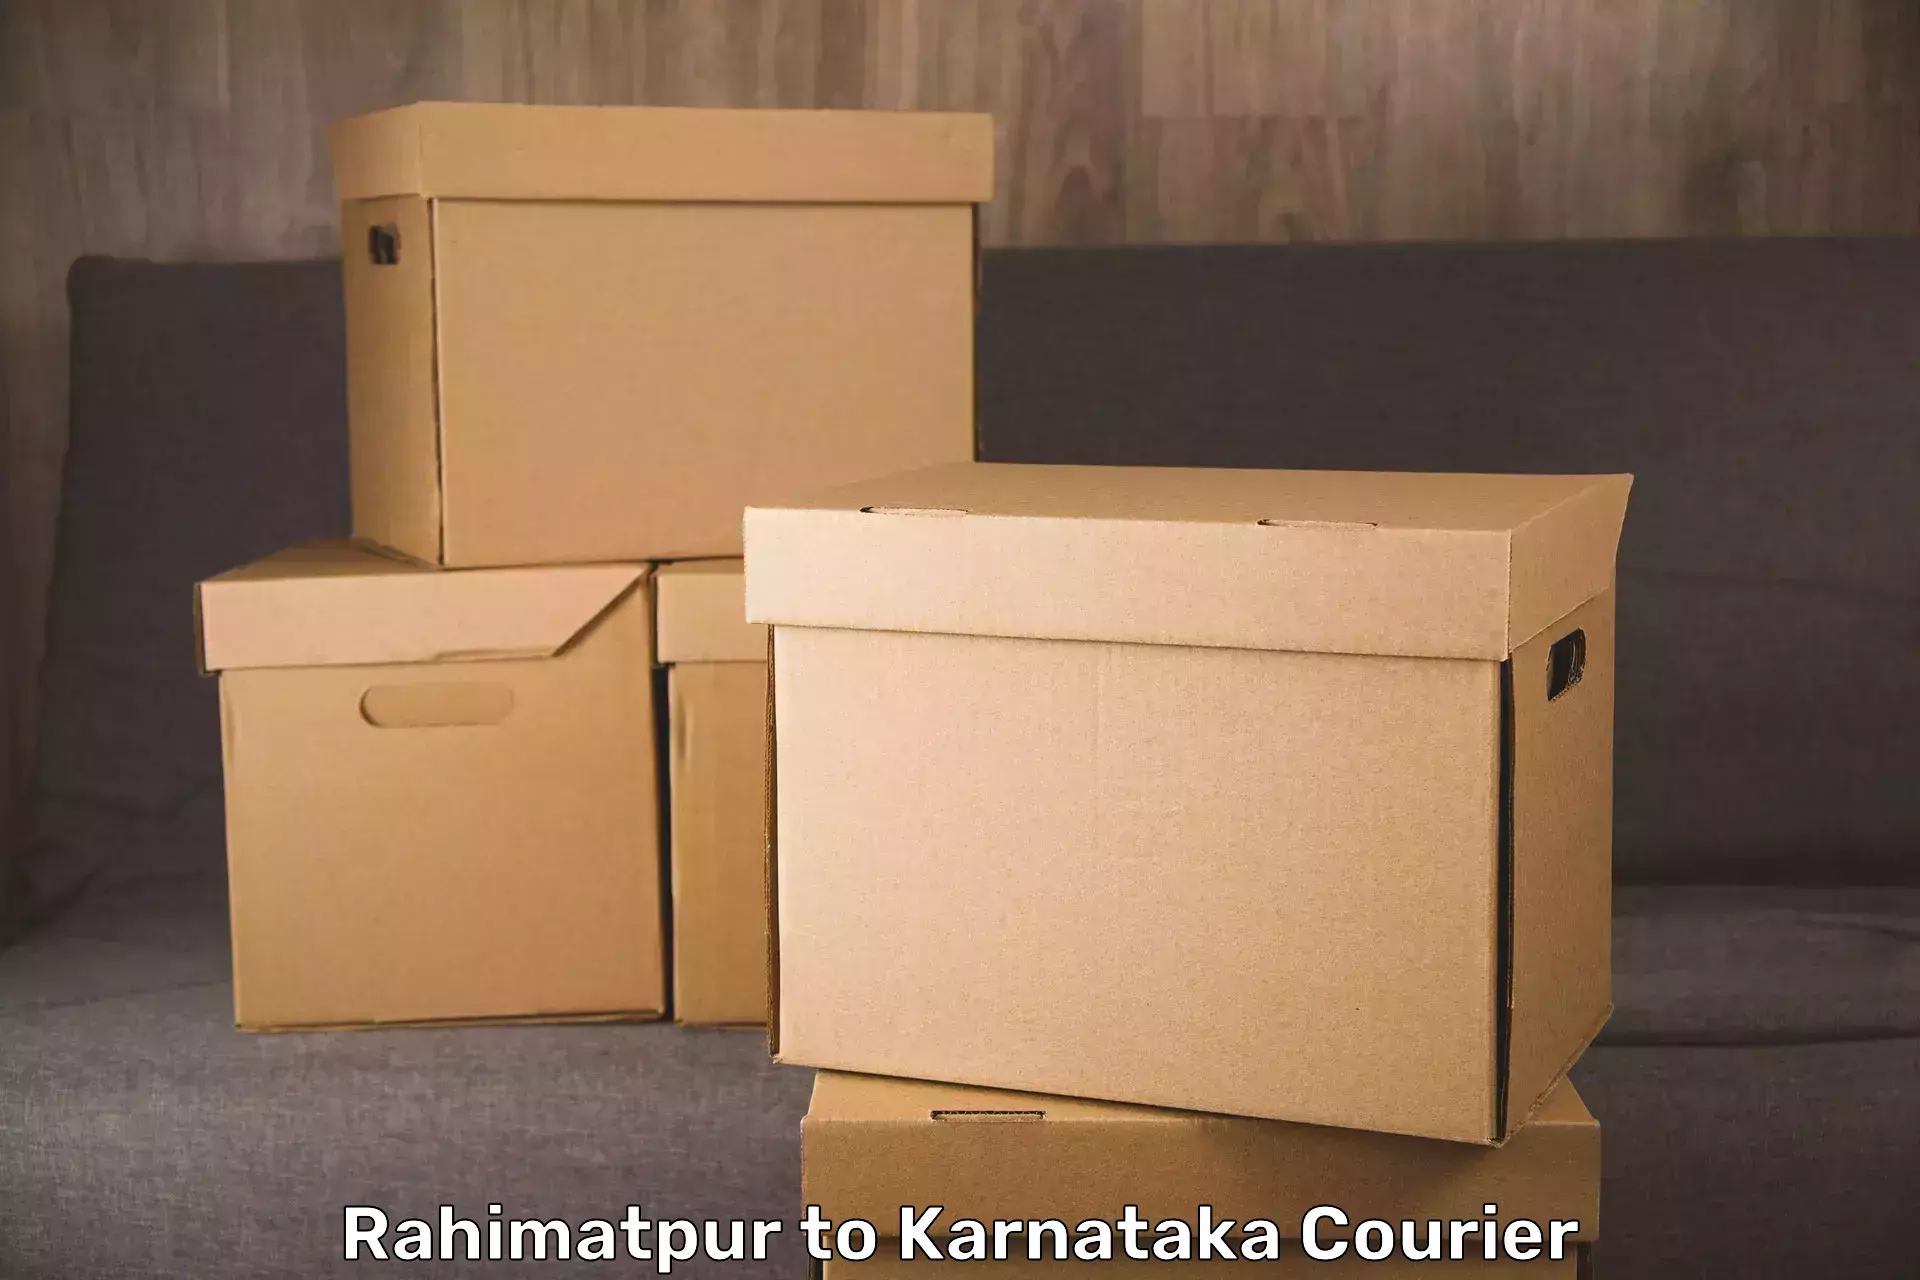 Luggage delivery network Rahimatpur to Sringeri